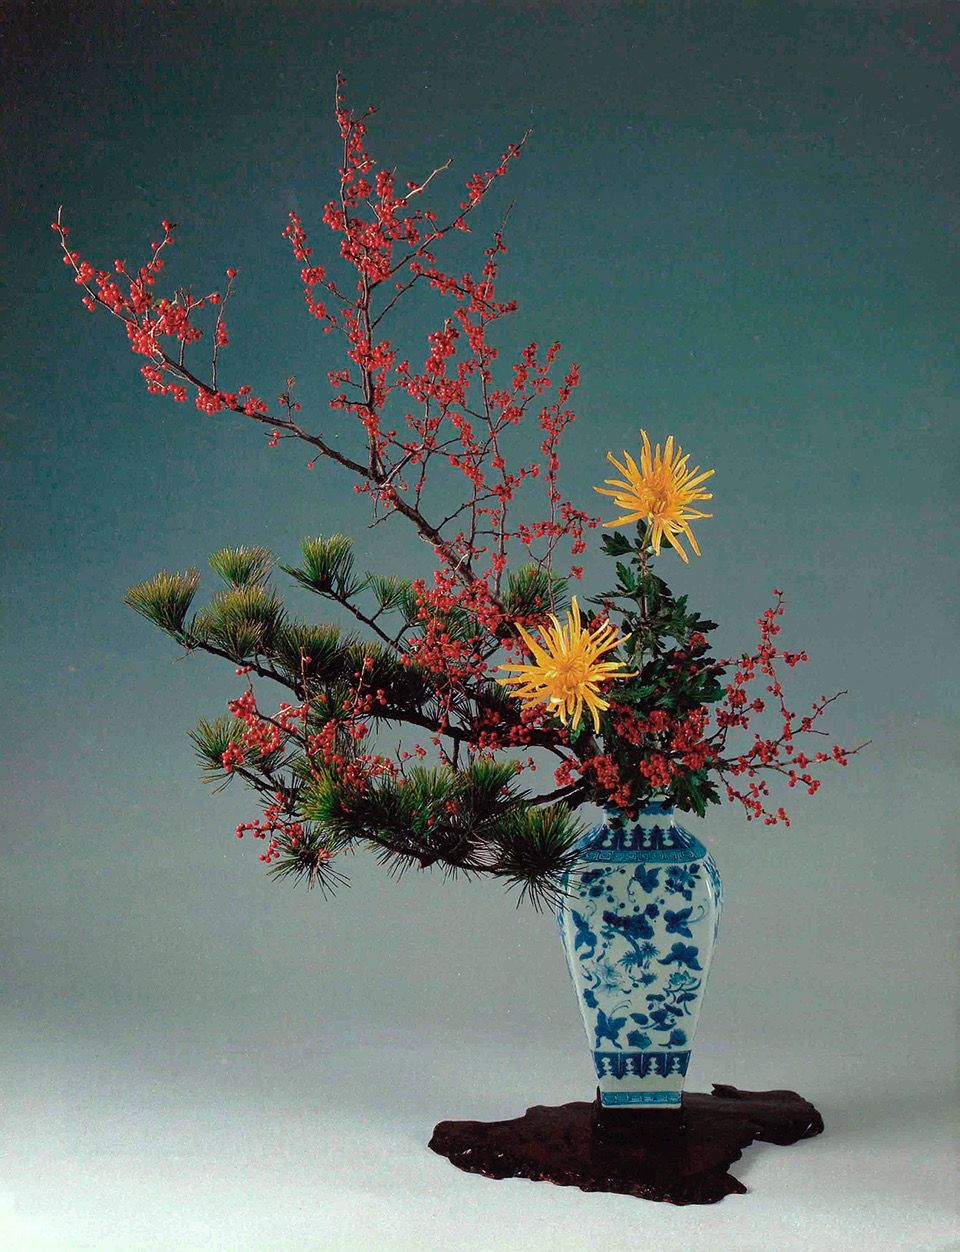 1月のいけばな 「小原豊雲、慶春の祝い花」【生け花、いけばな、生花 